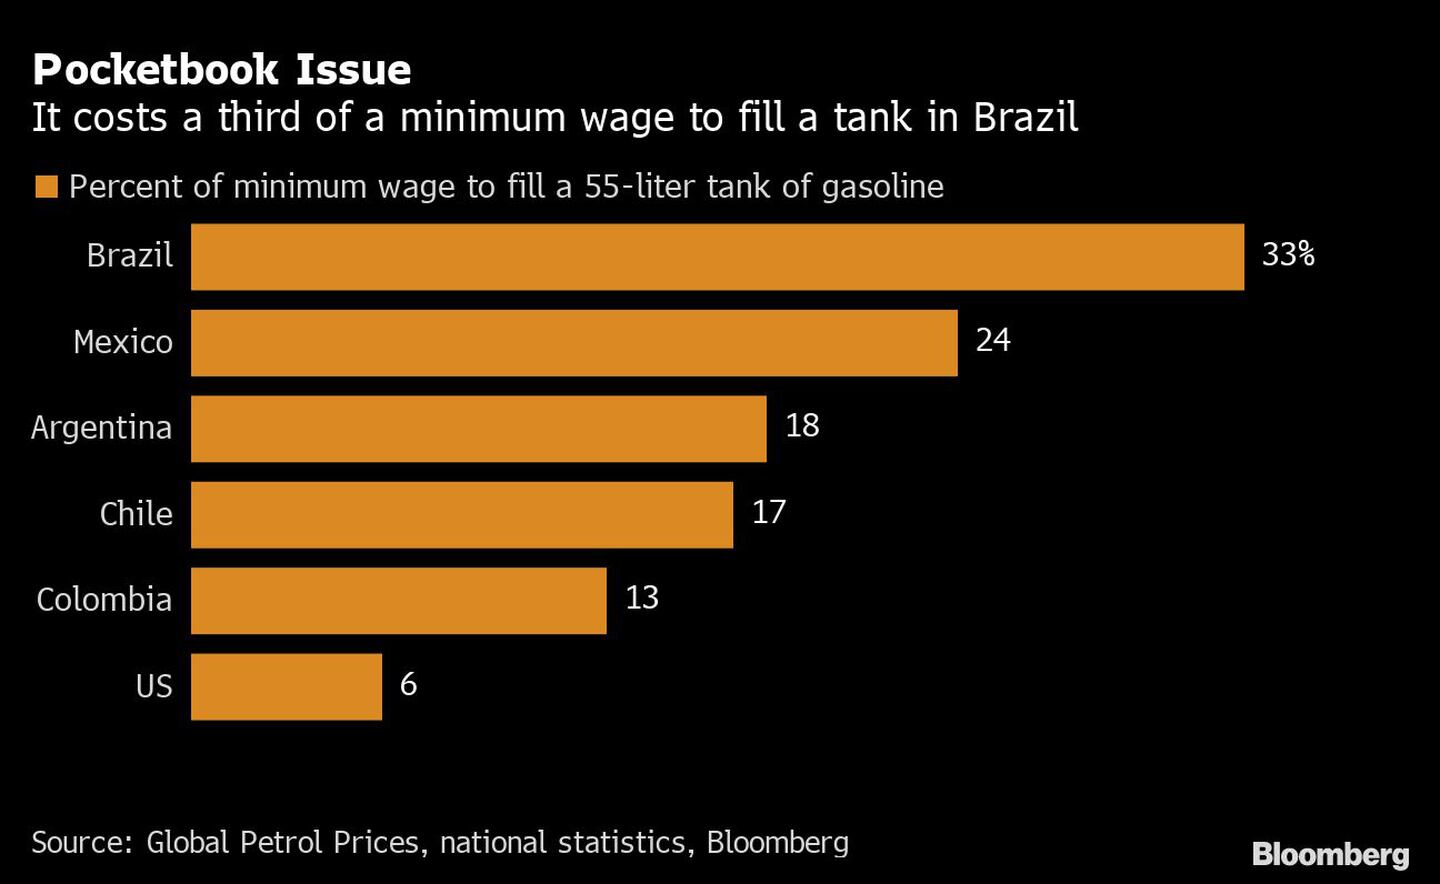 No Brasil, custa cerca de um terço do salário mínimo para encher um tanque com capacidade média de 55 litrosdfd